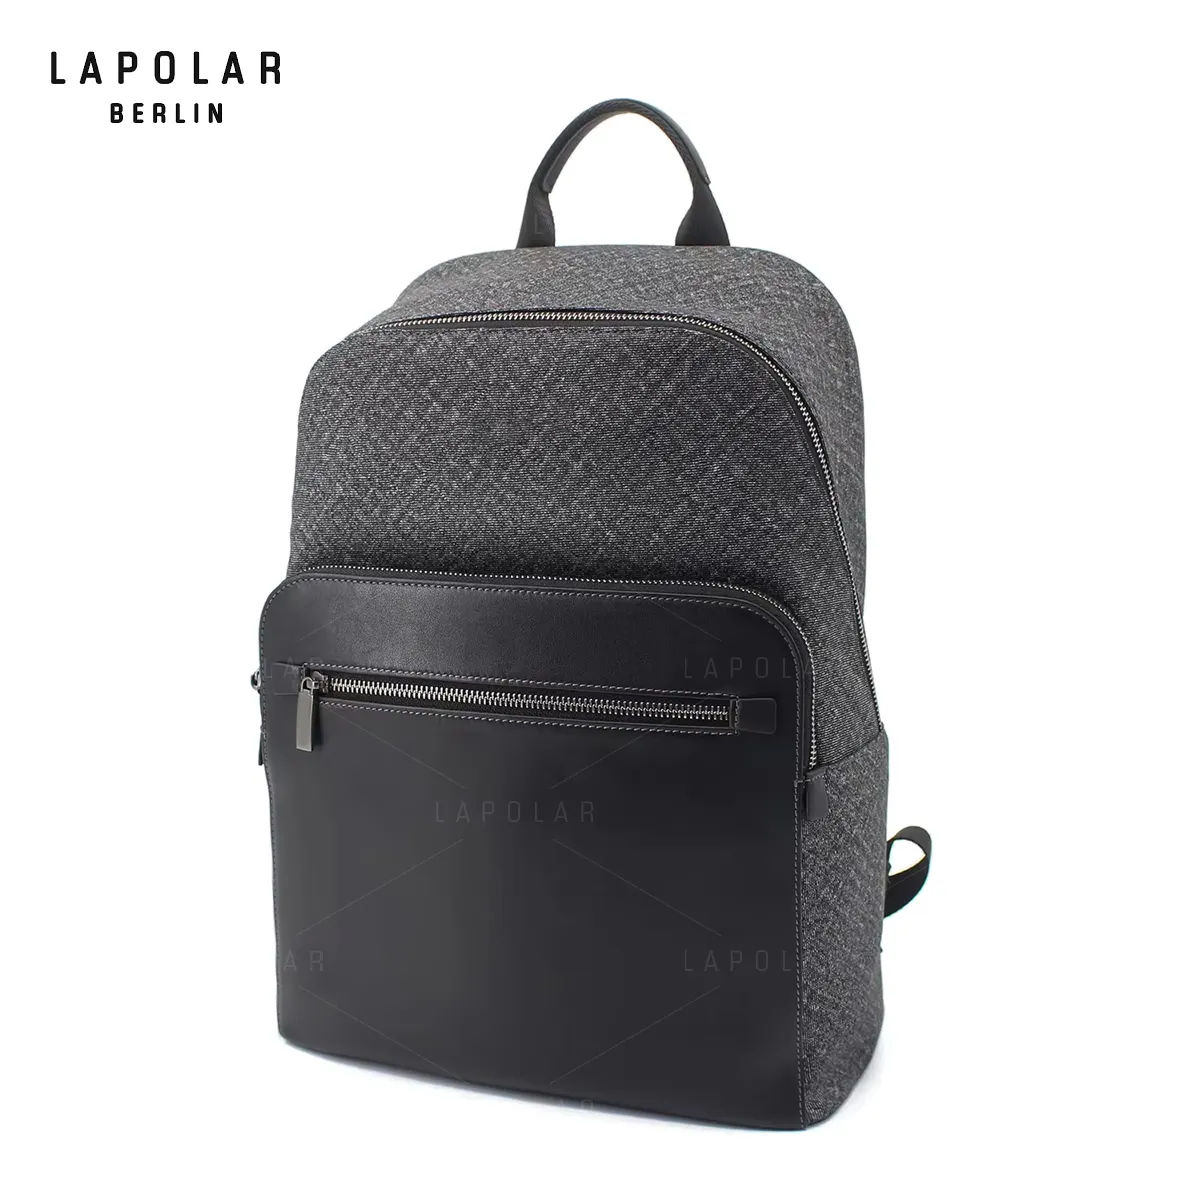 LAPOLAR lüks tasarımcı sırt çantası siyah erkek rahat dayanıklı 15.6 inç Laptop çantası iş dizüstü bilgisayar seyahat sırt çantası